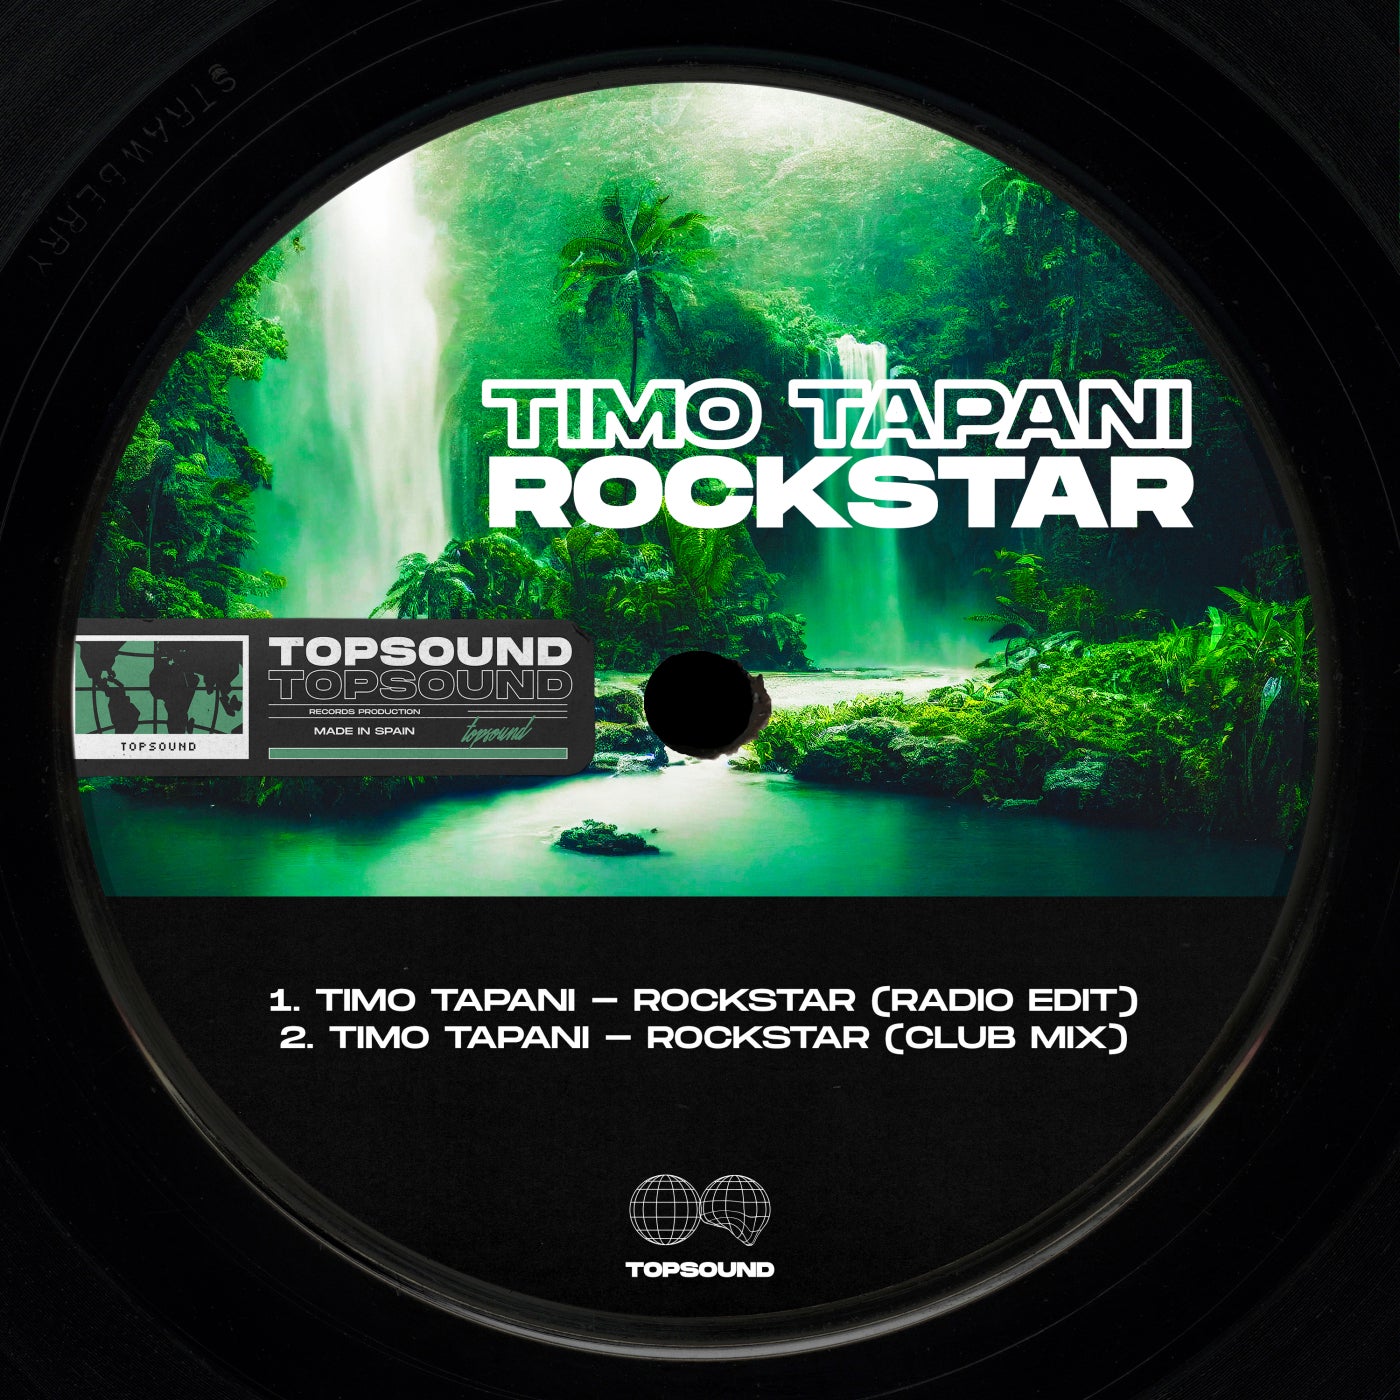 Rockstar Mix) Timo Tapani on